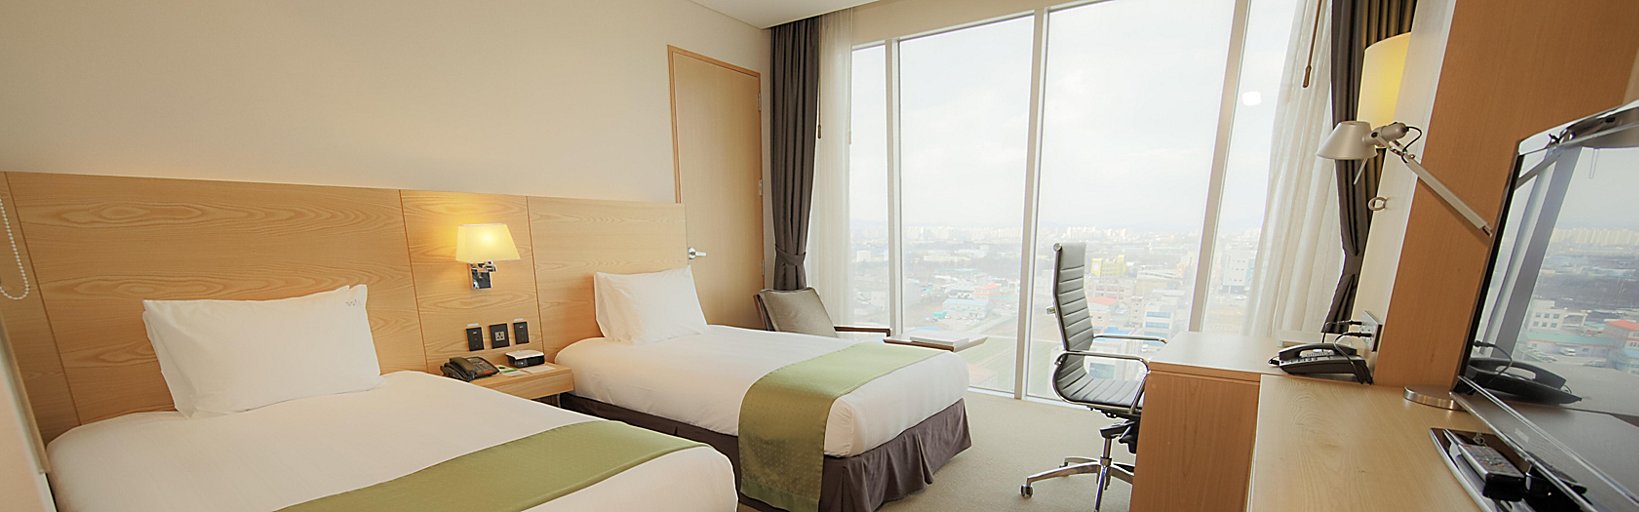 Holiday Inn Gwangju Hotels Holiday Inn Gwangju Korea